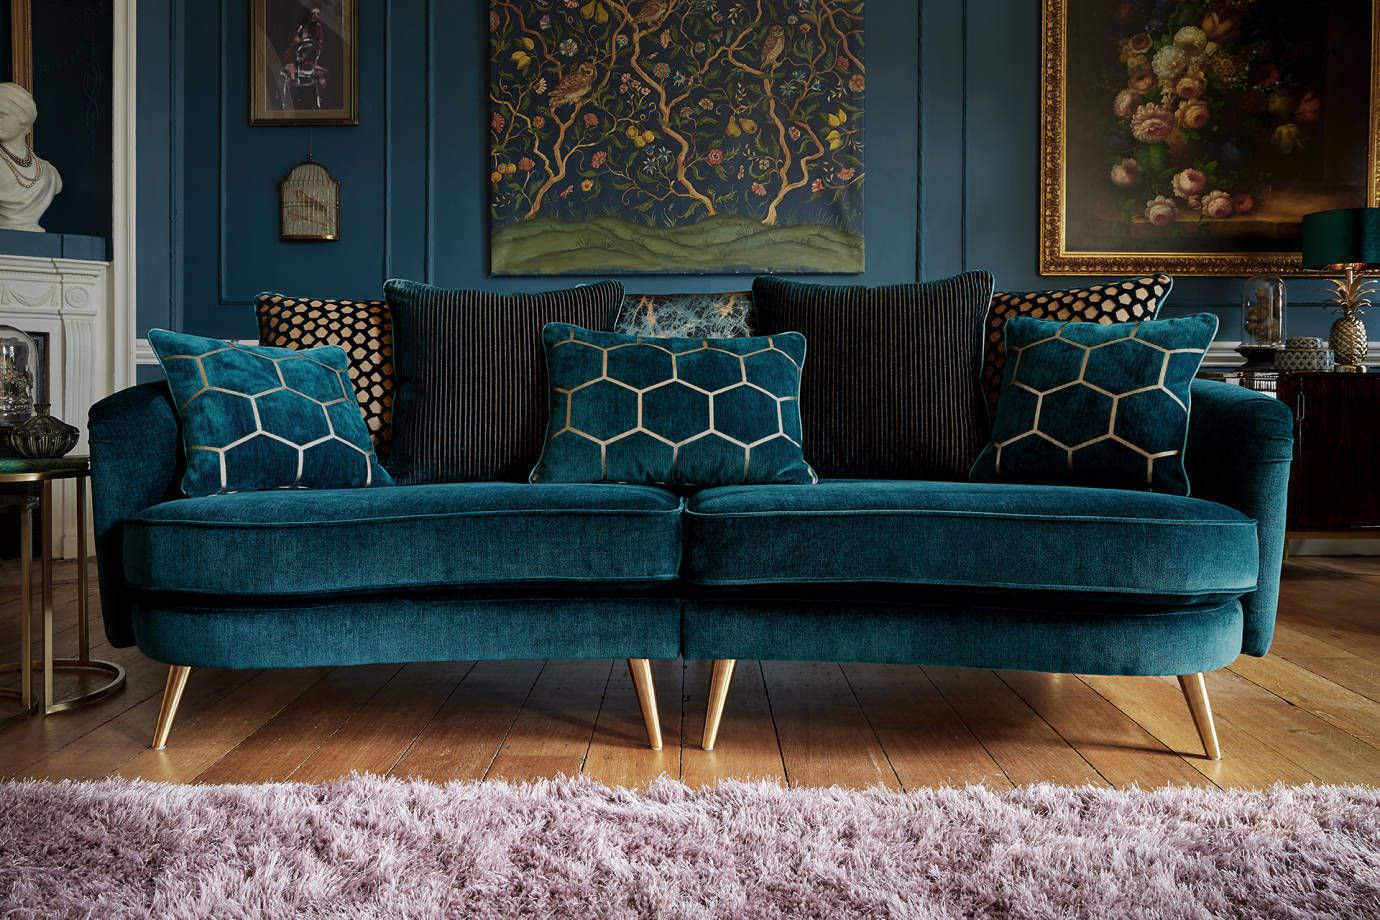 Mẫu ghế sofa hiện đại bọc nhung xanh cao cấp đem lại sự sang trọng cho không gian phòng khách